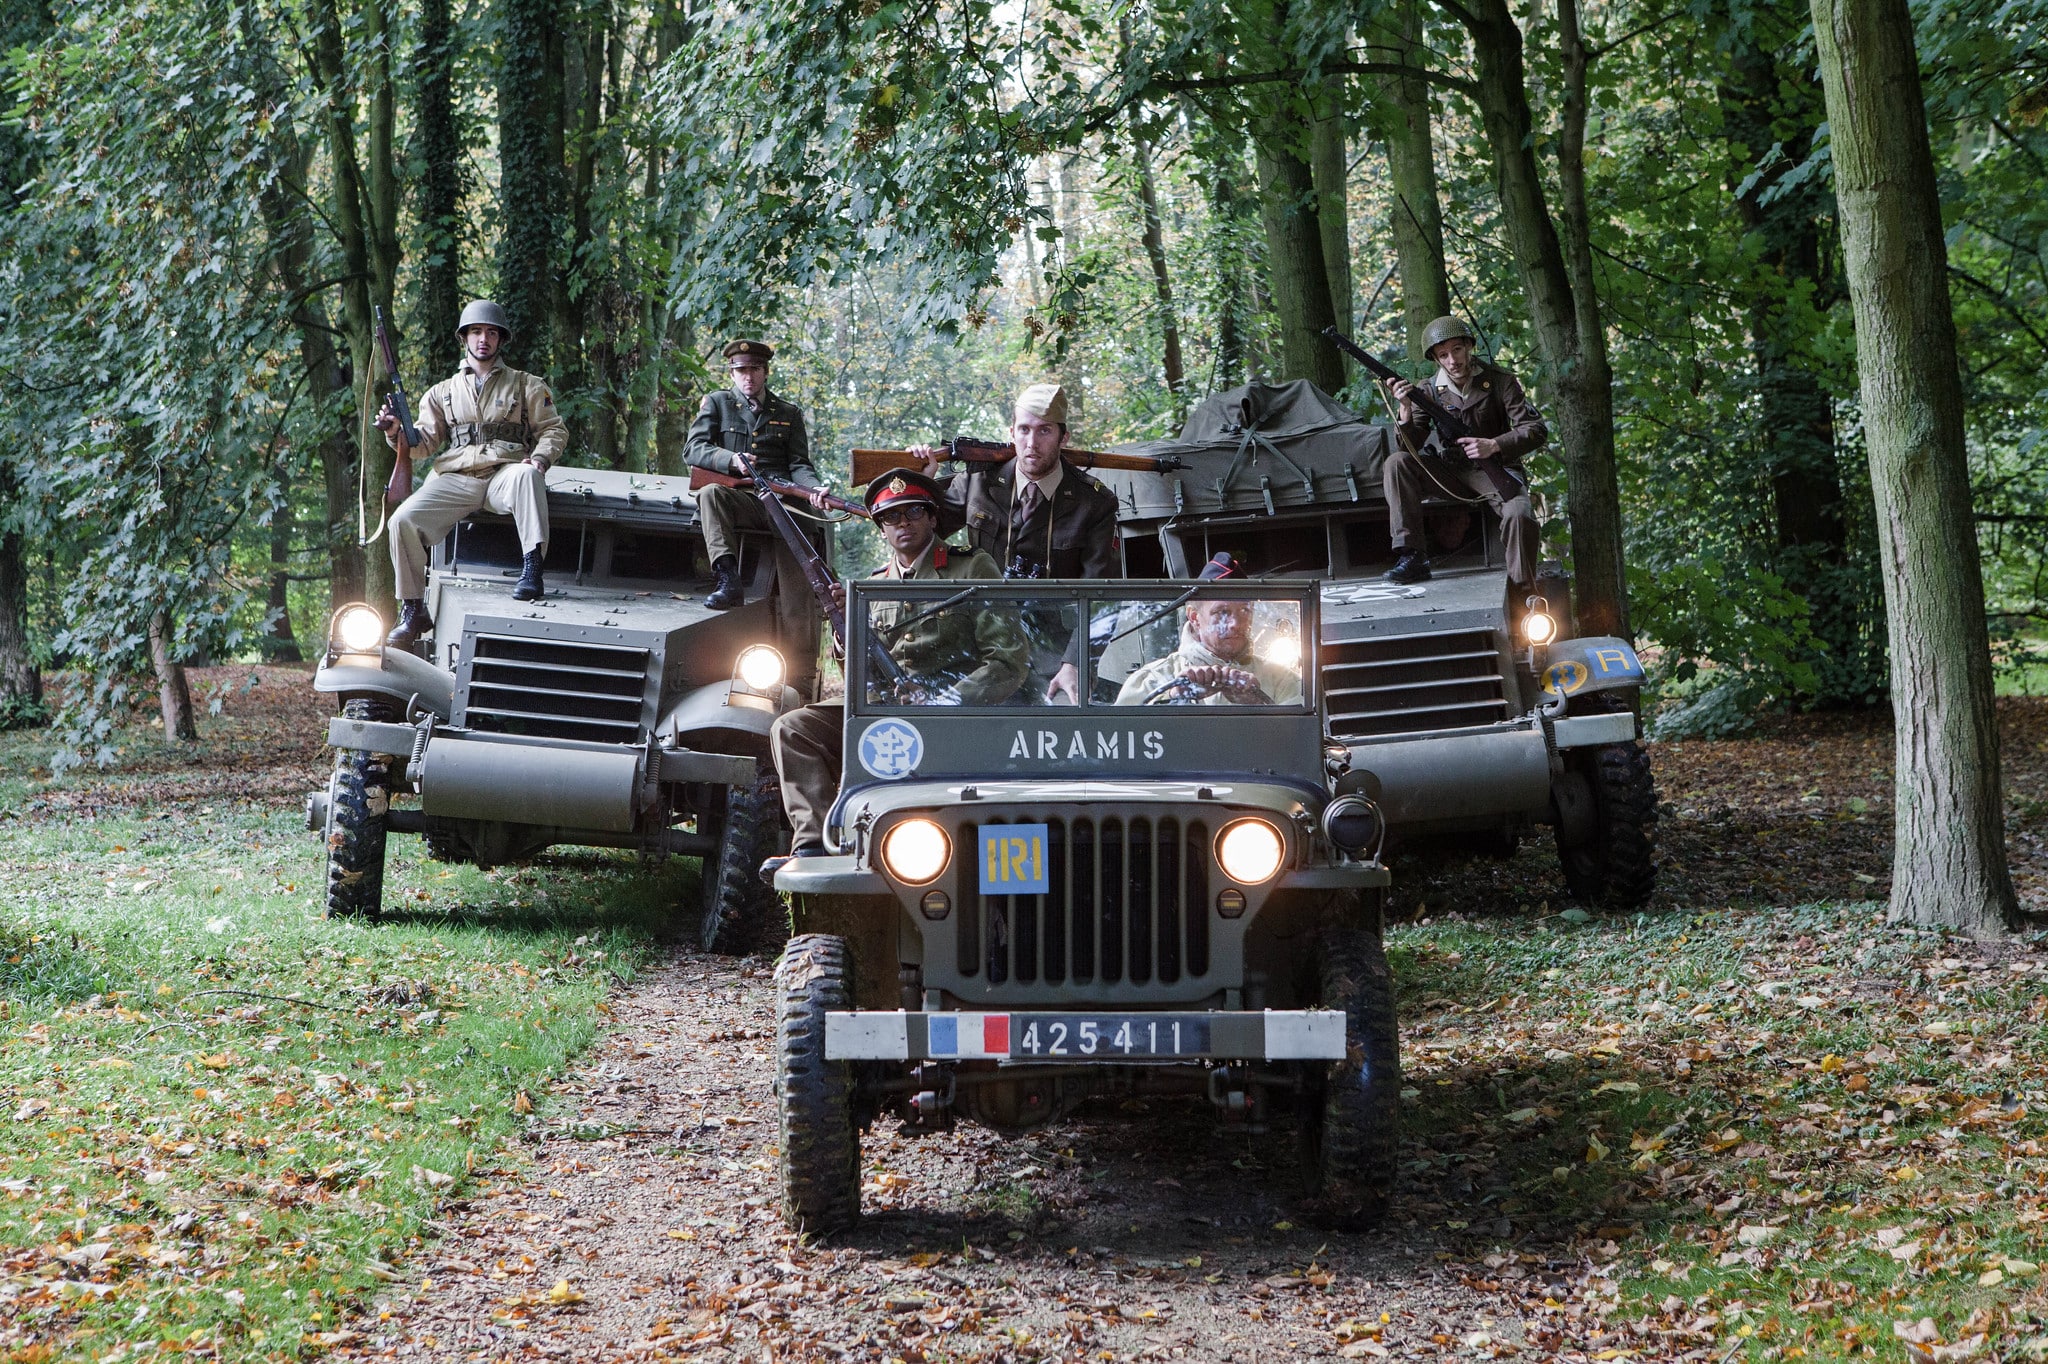 soldats-français-acteurs-blindés-jeep-véhicule-militaire-seconde-guerre-mondiale-France-teaser-video-Victorious-Shelter-agence-wato-we-are-the-oracle-evenementiel-event